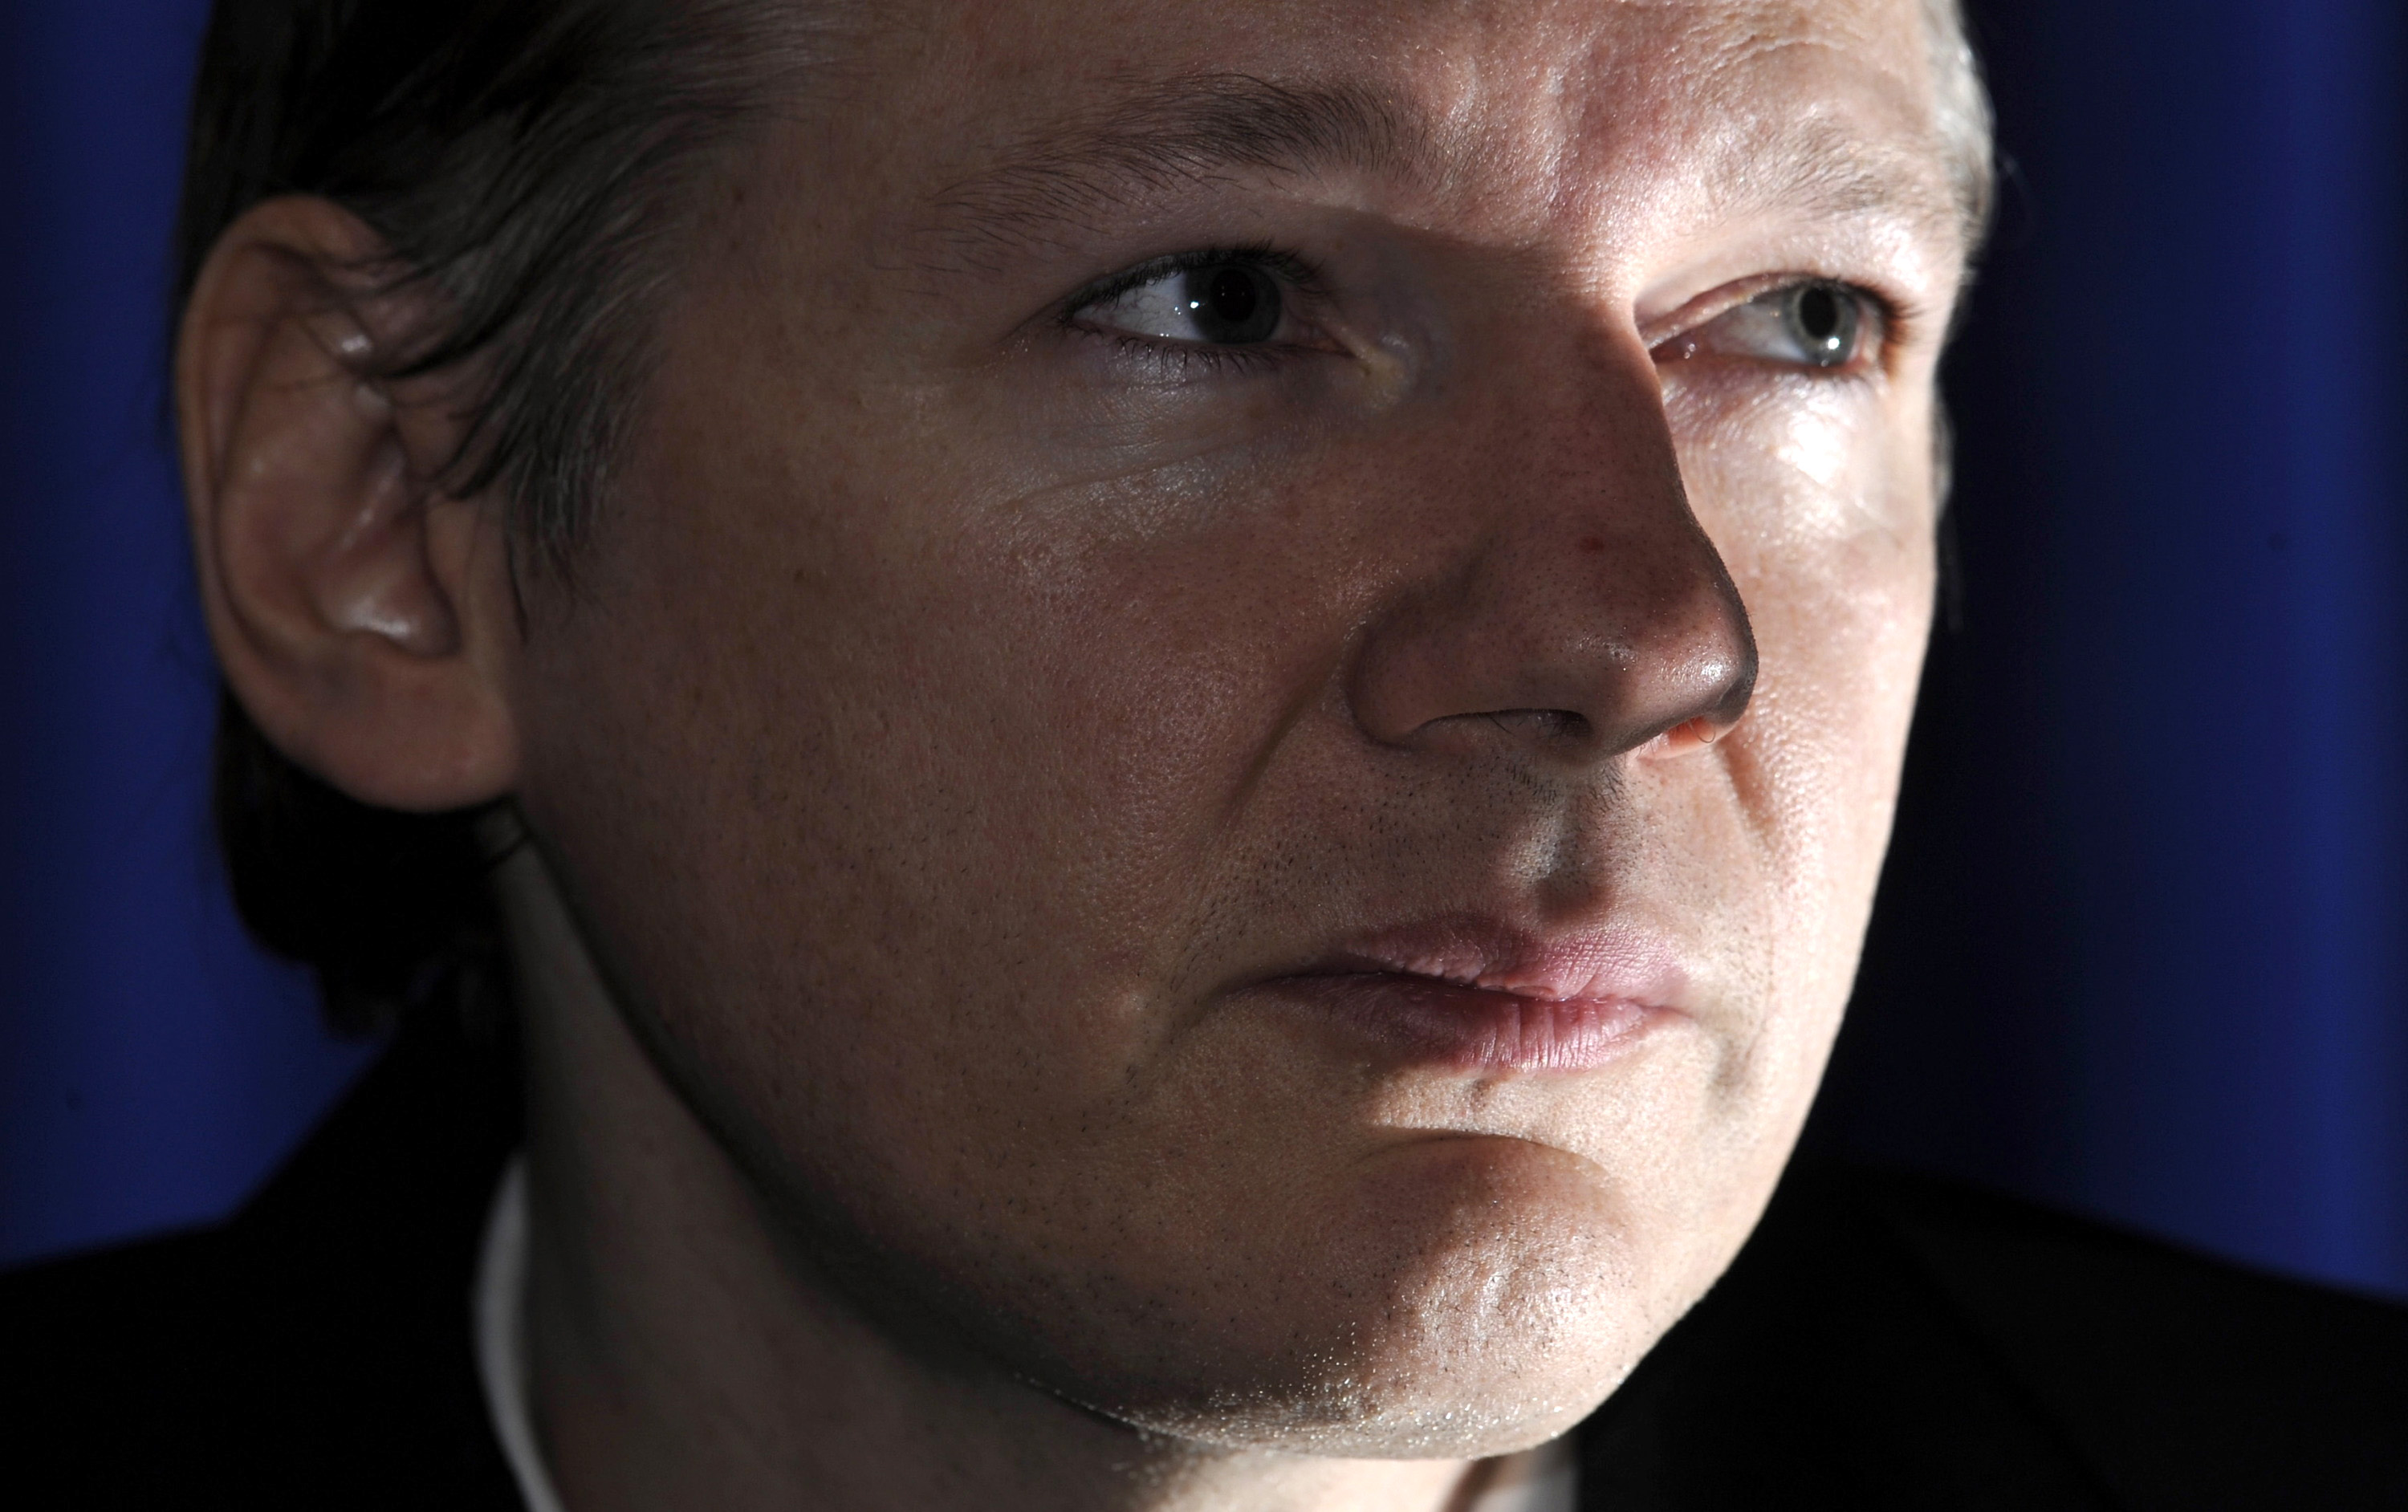 24/8/2010. Julian Assange anhålls i slutet på augusti i sin frånvaro misstänkt för våldtäkt och sexuellt ofredande. Anhållandet hävs sedan, men misstankarna återupptas snart. I slutet på december är frågan allt annat än utredd och Assange är häktad i sin 